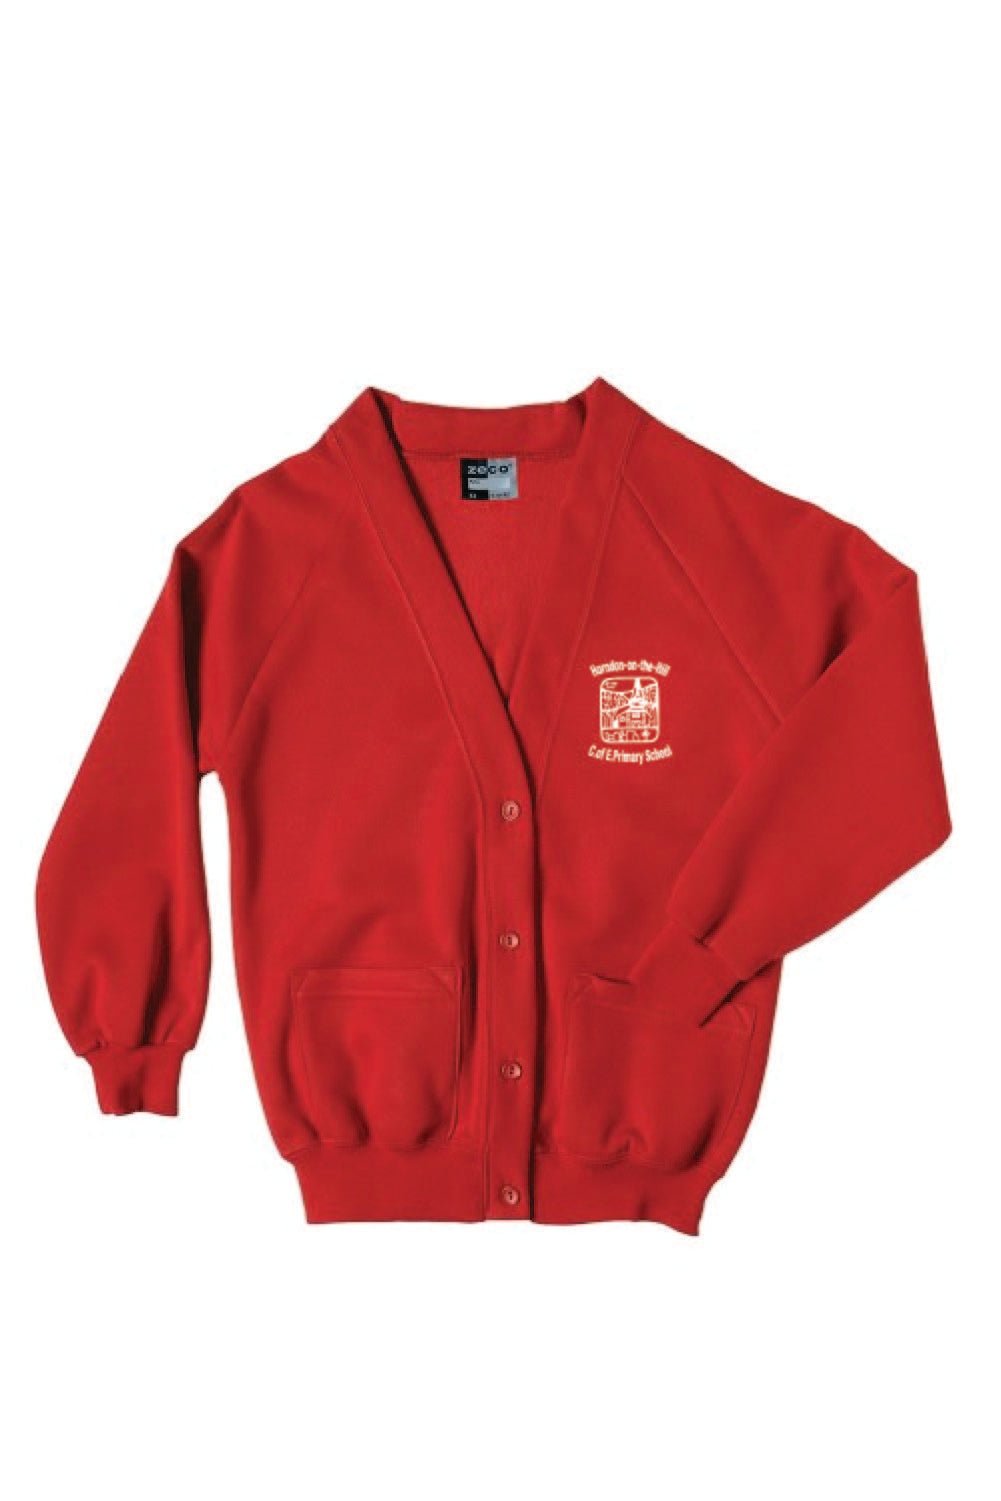 Horndon-on-the-Hill School Cardigan - Uniformwise Schoolwear